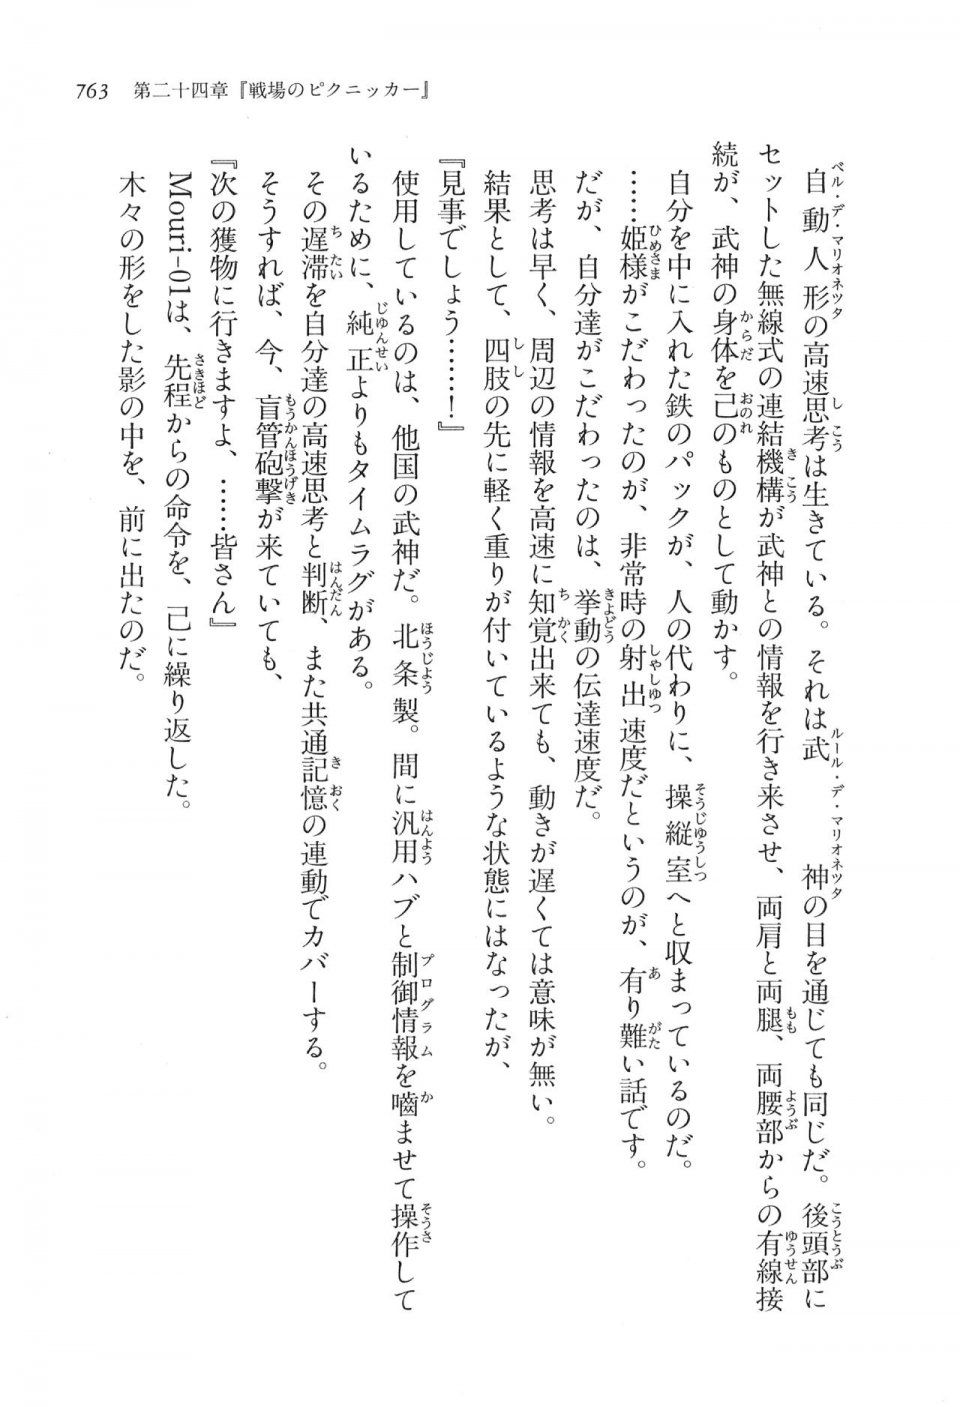 Kyoukai Senjou no Horizon LN Vol 16(7A) - Photo #763